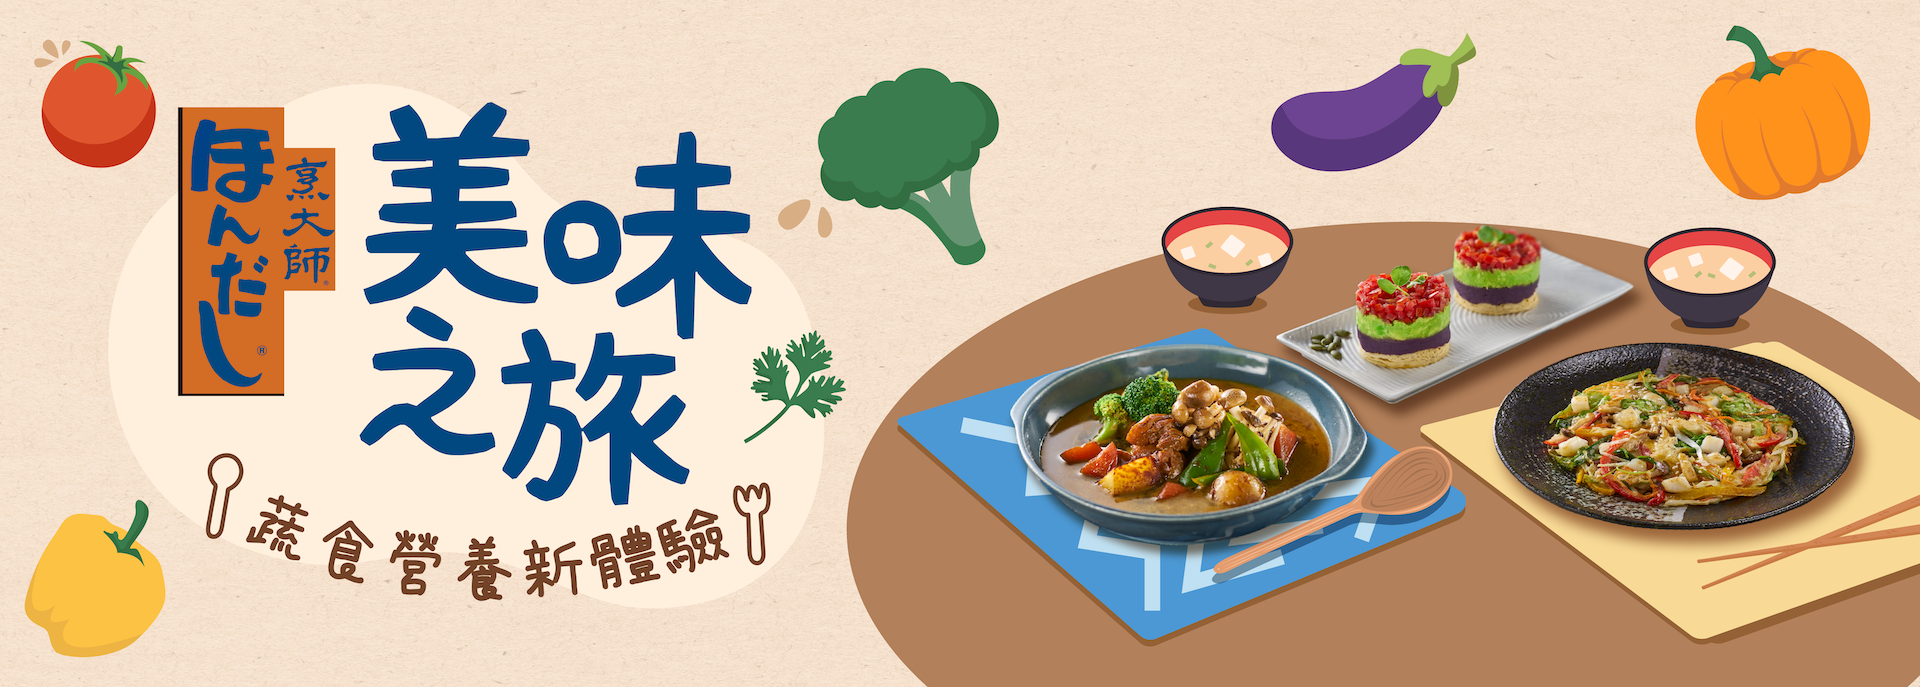 「烹大師®」美味之旅 蔬食營養新體驗 抽獎活動 抽日本來回機票及住宿券